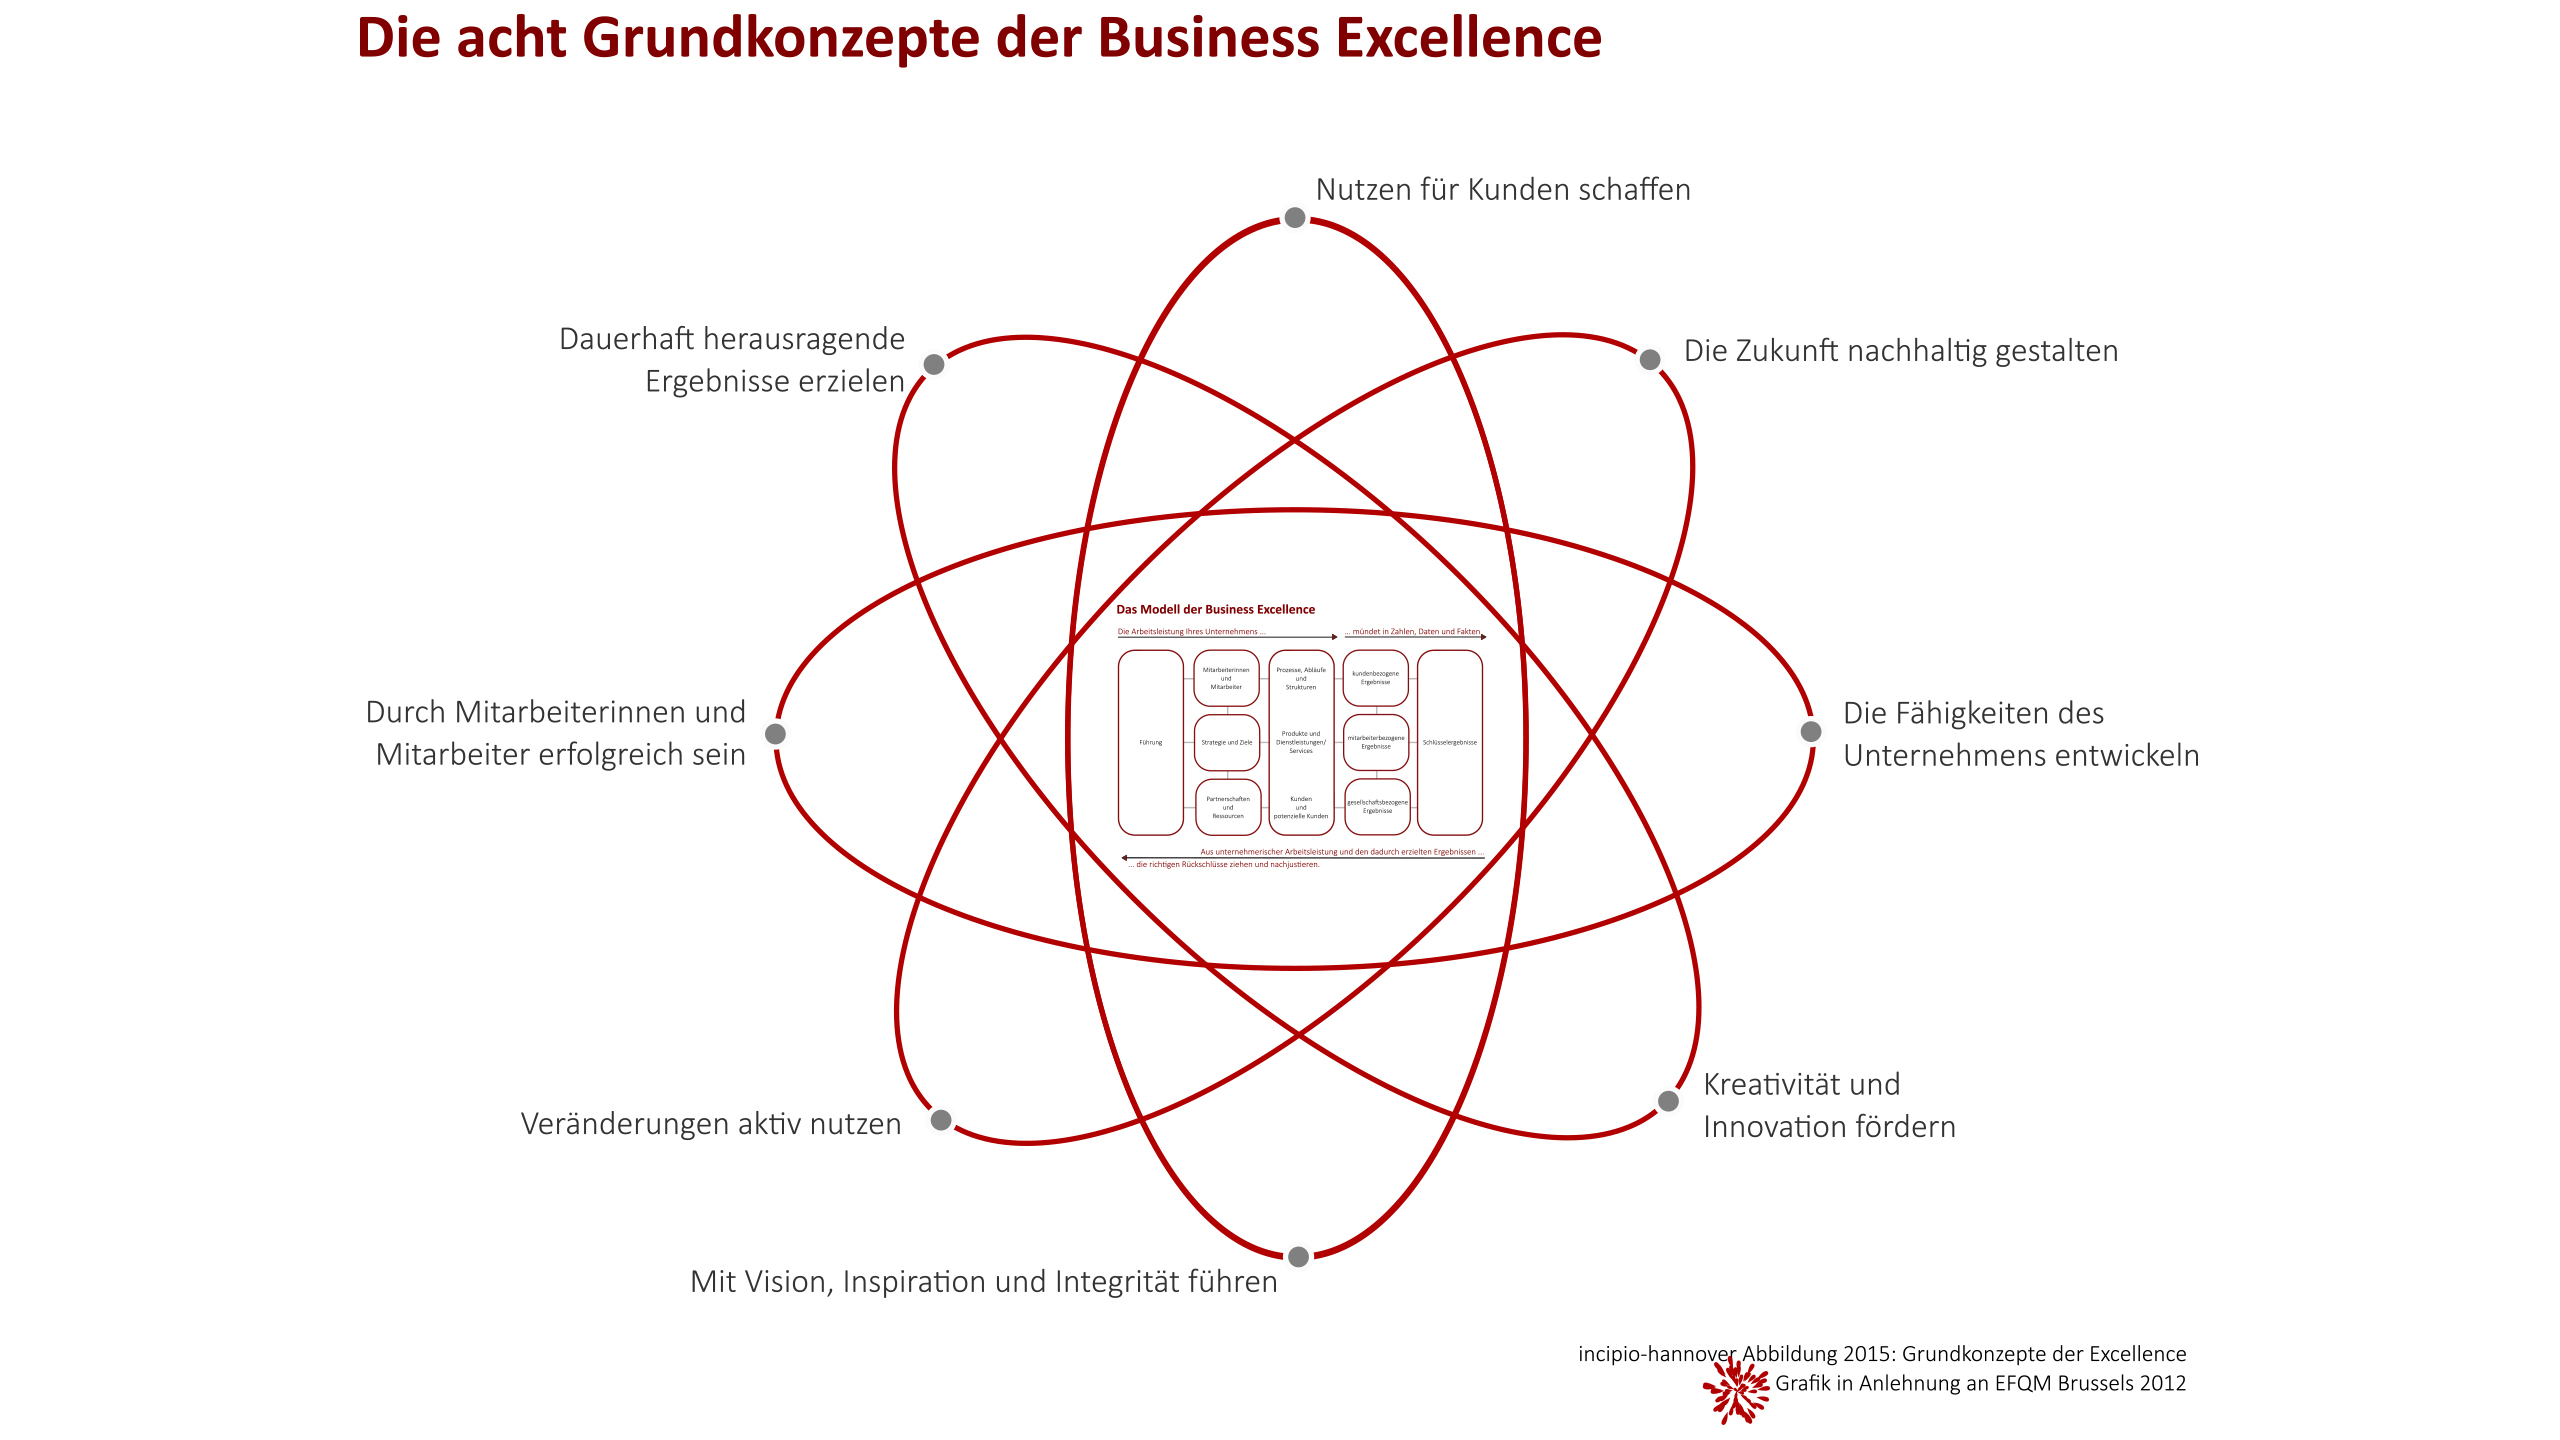 Die acht Grundkonzepte der Business Excellence